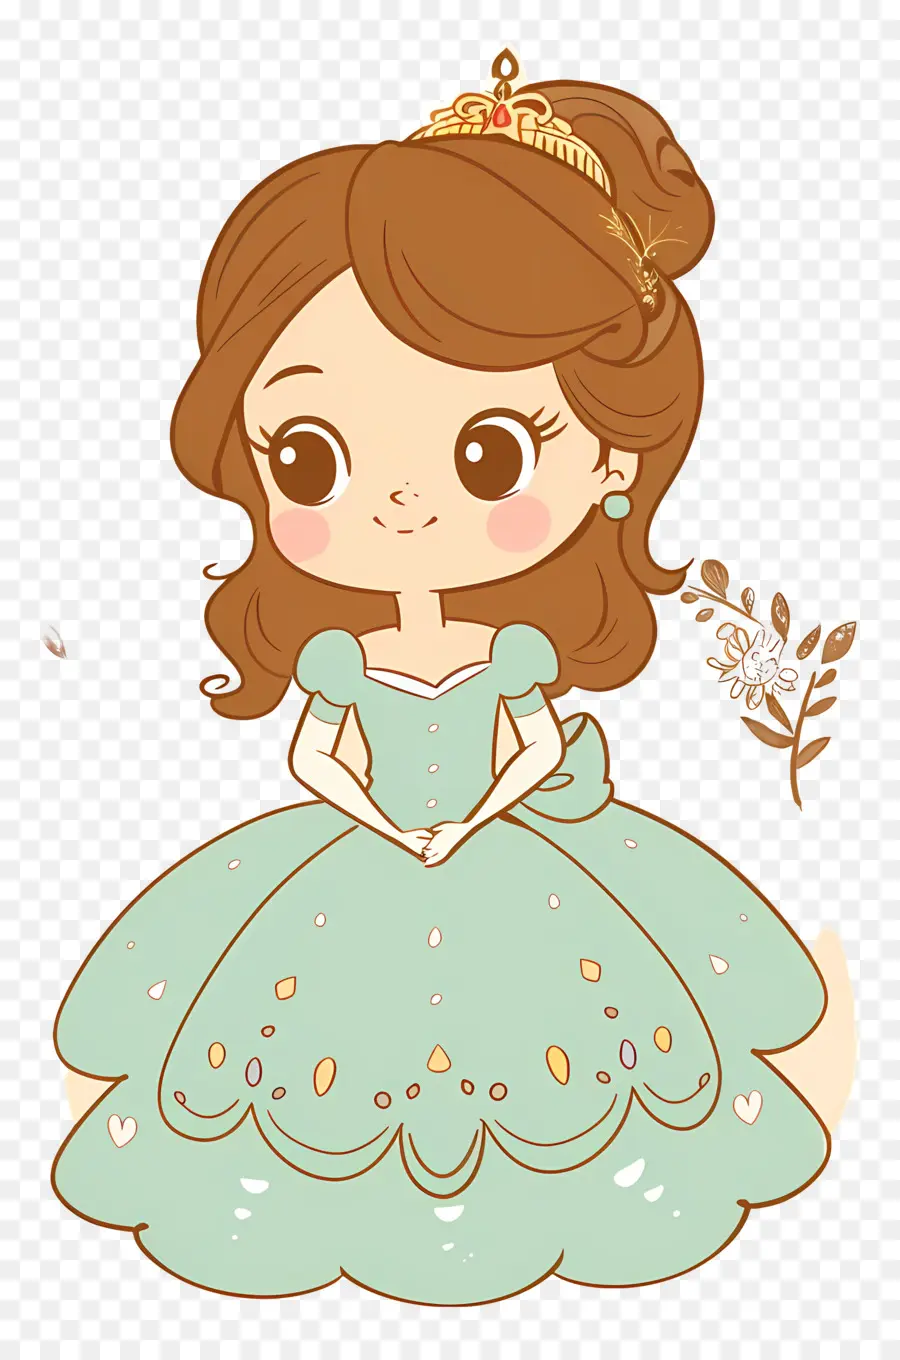 Công chúa Sofia nhân vật hoạt hình cô gái Váy xanh dài tóc nâu - Cô gái hoạt hình mặc váy màu xanh lá cây mỉm cười